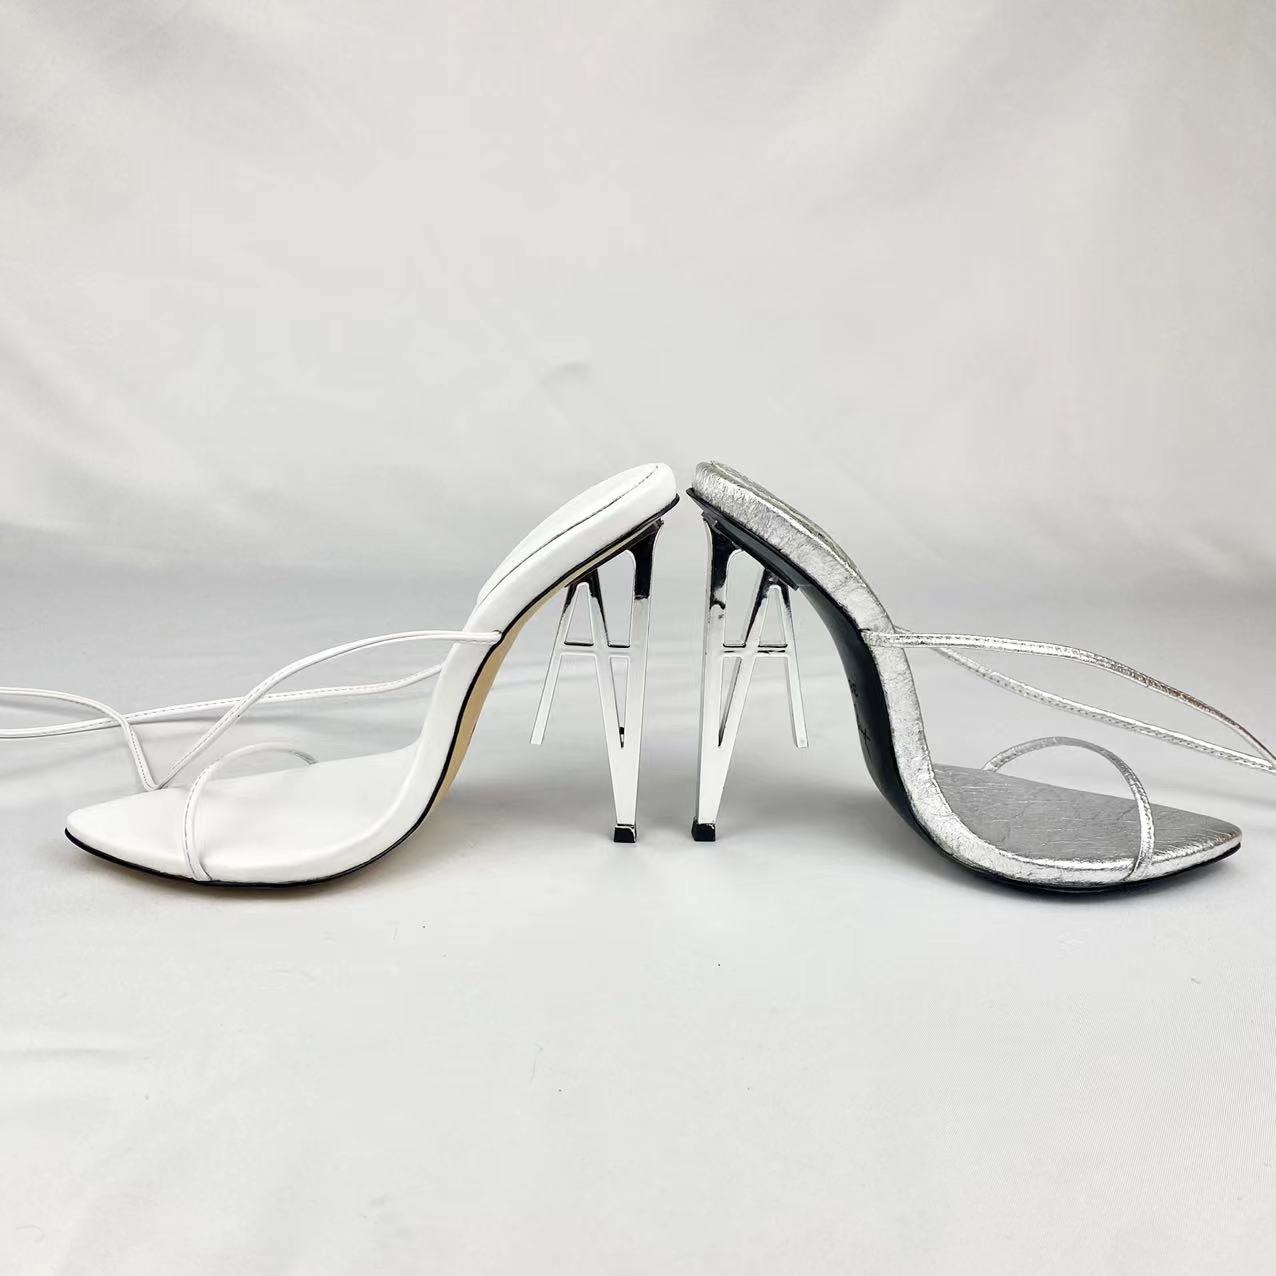 https://www.lihangzishoes.com/news/custom-damessandalen-letter-a-heel-design-with-duurzame-materialen/